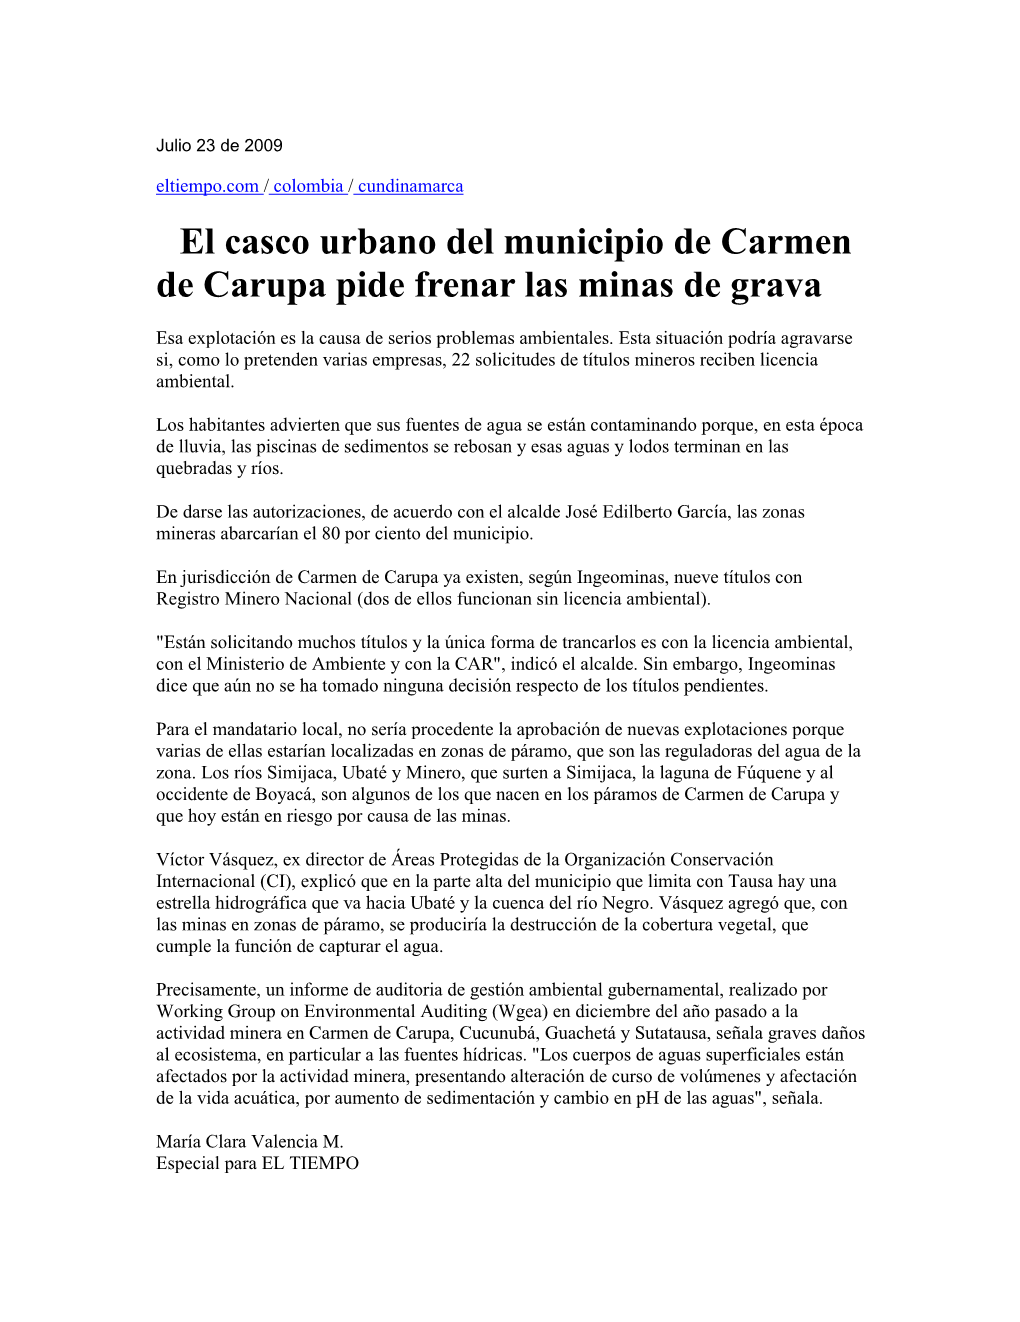 El Casco Urbano Del Municipio De Carmen De Carupa Pide Frenar Las Minas De Grava